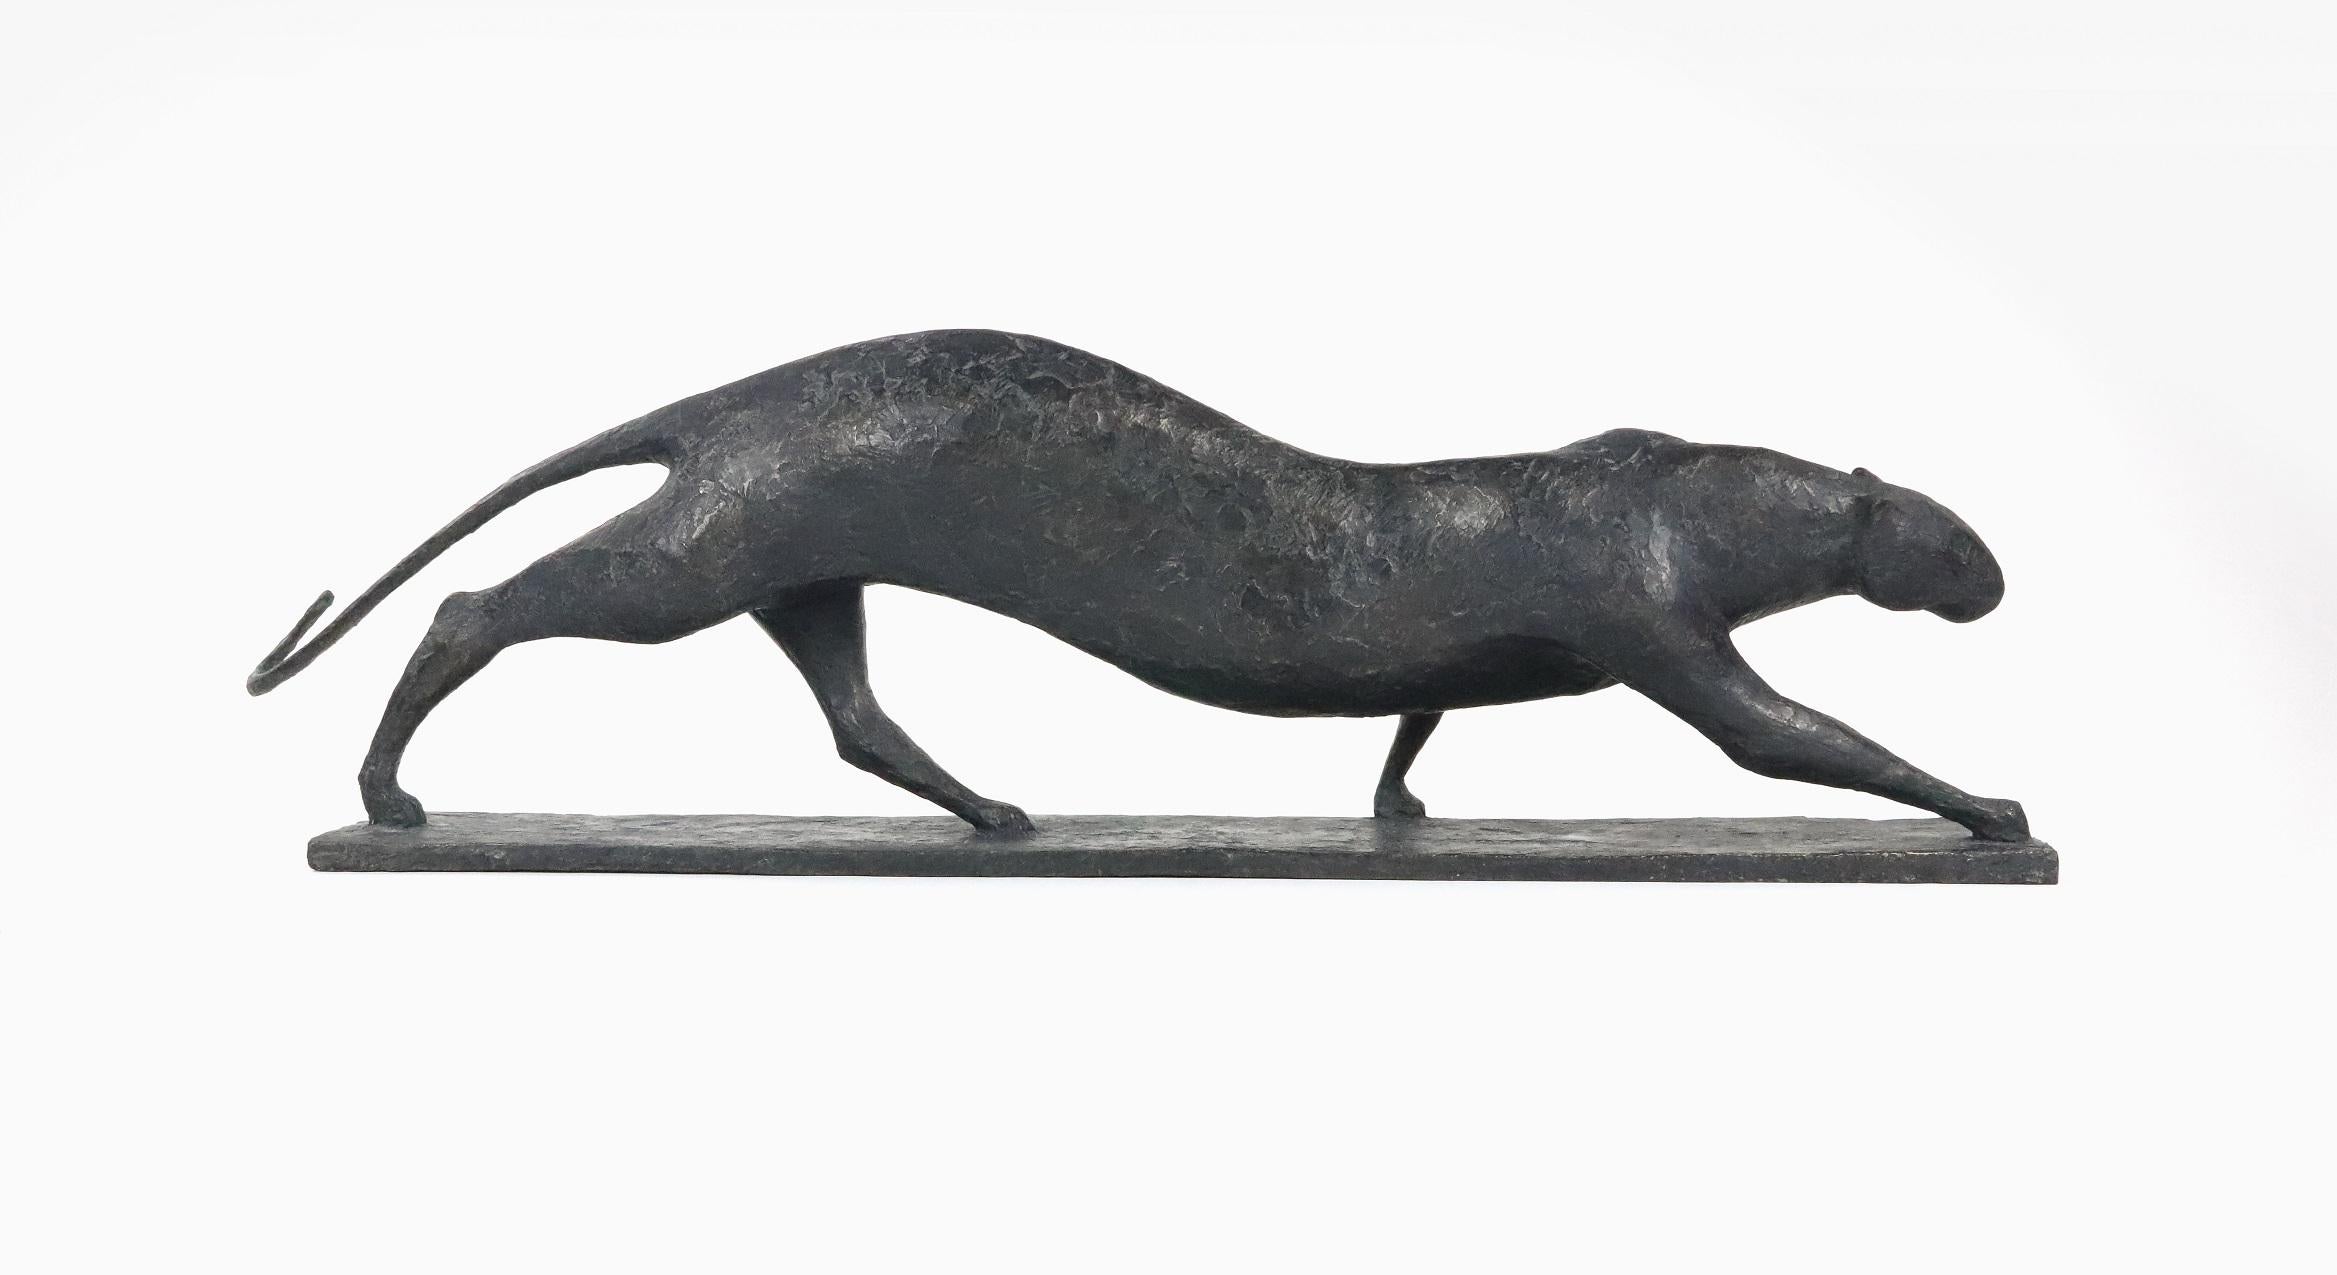 Feline IV est une sculpture en bronze de l'artiste contemporain français Pierre Yermia, dont les dimensions sont de 24 × 90 × 20 cm (9,4 × 35,4 × 7,9 in). 
La sculpture est signée et numérotée, elle fait partie d'une édition limitée à 8 exemplaires